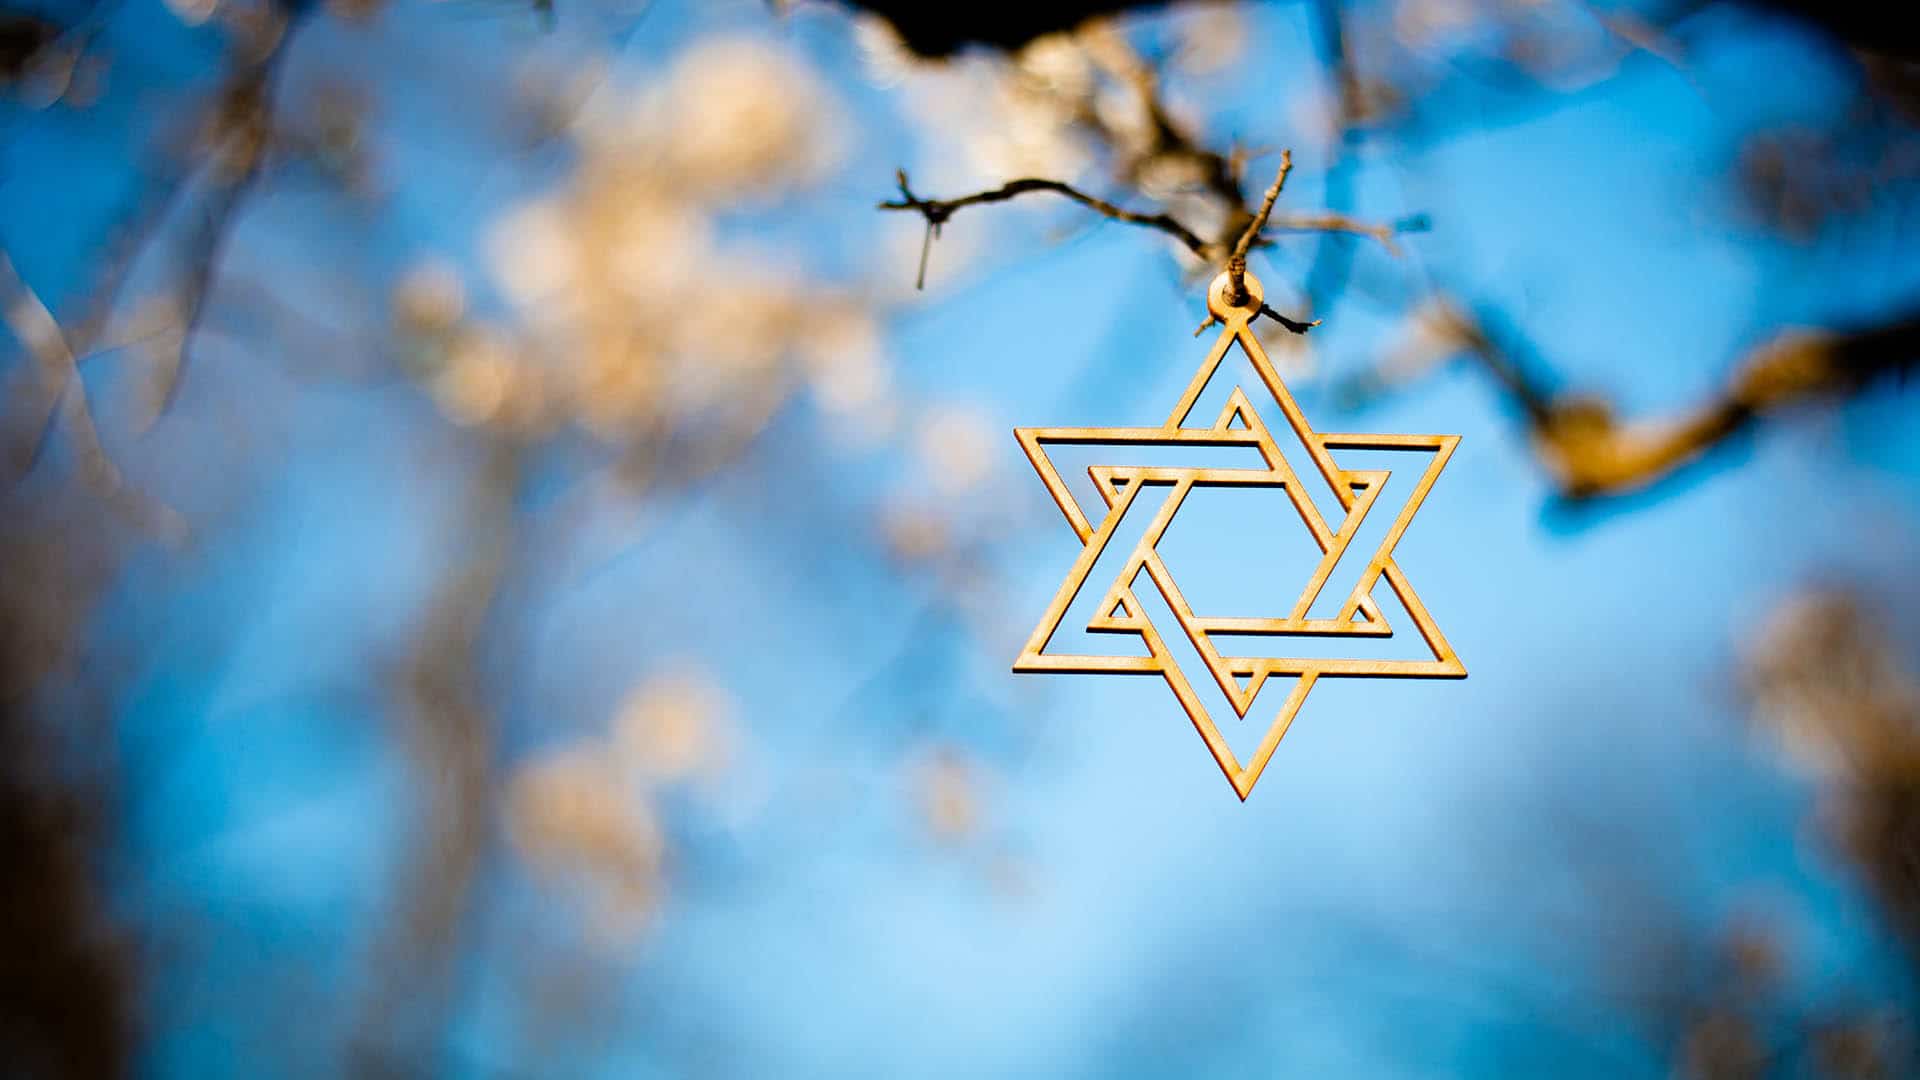 Vor einem Jahr, am 9. Oktober 2019, gab es den antisemitischen Anschlag in Halle. Vertreter der Evangelischen Kirche in Deutschland nahmen diesen Tag zum Anlass, Antisemitismus als „Sünde vor Gott“ zu verurteilen.